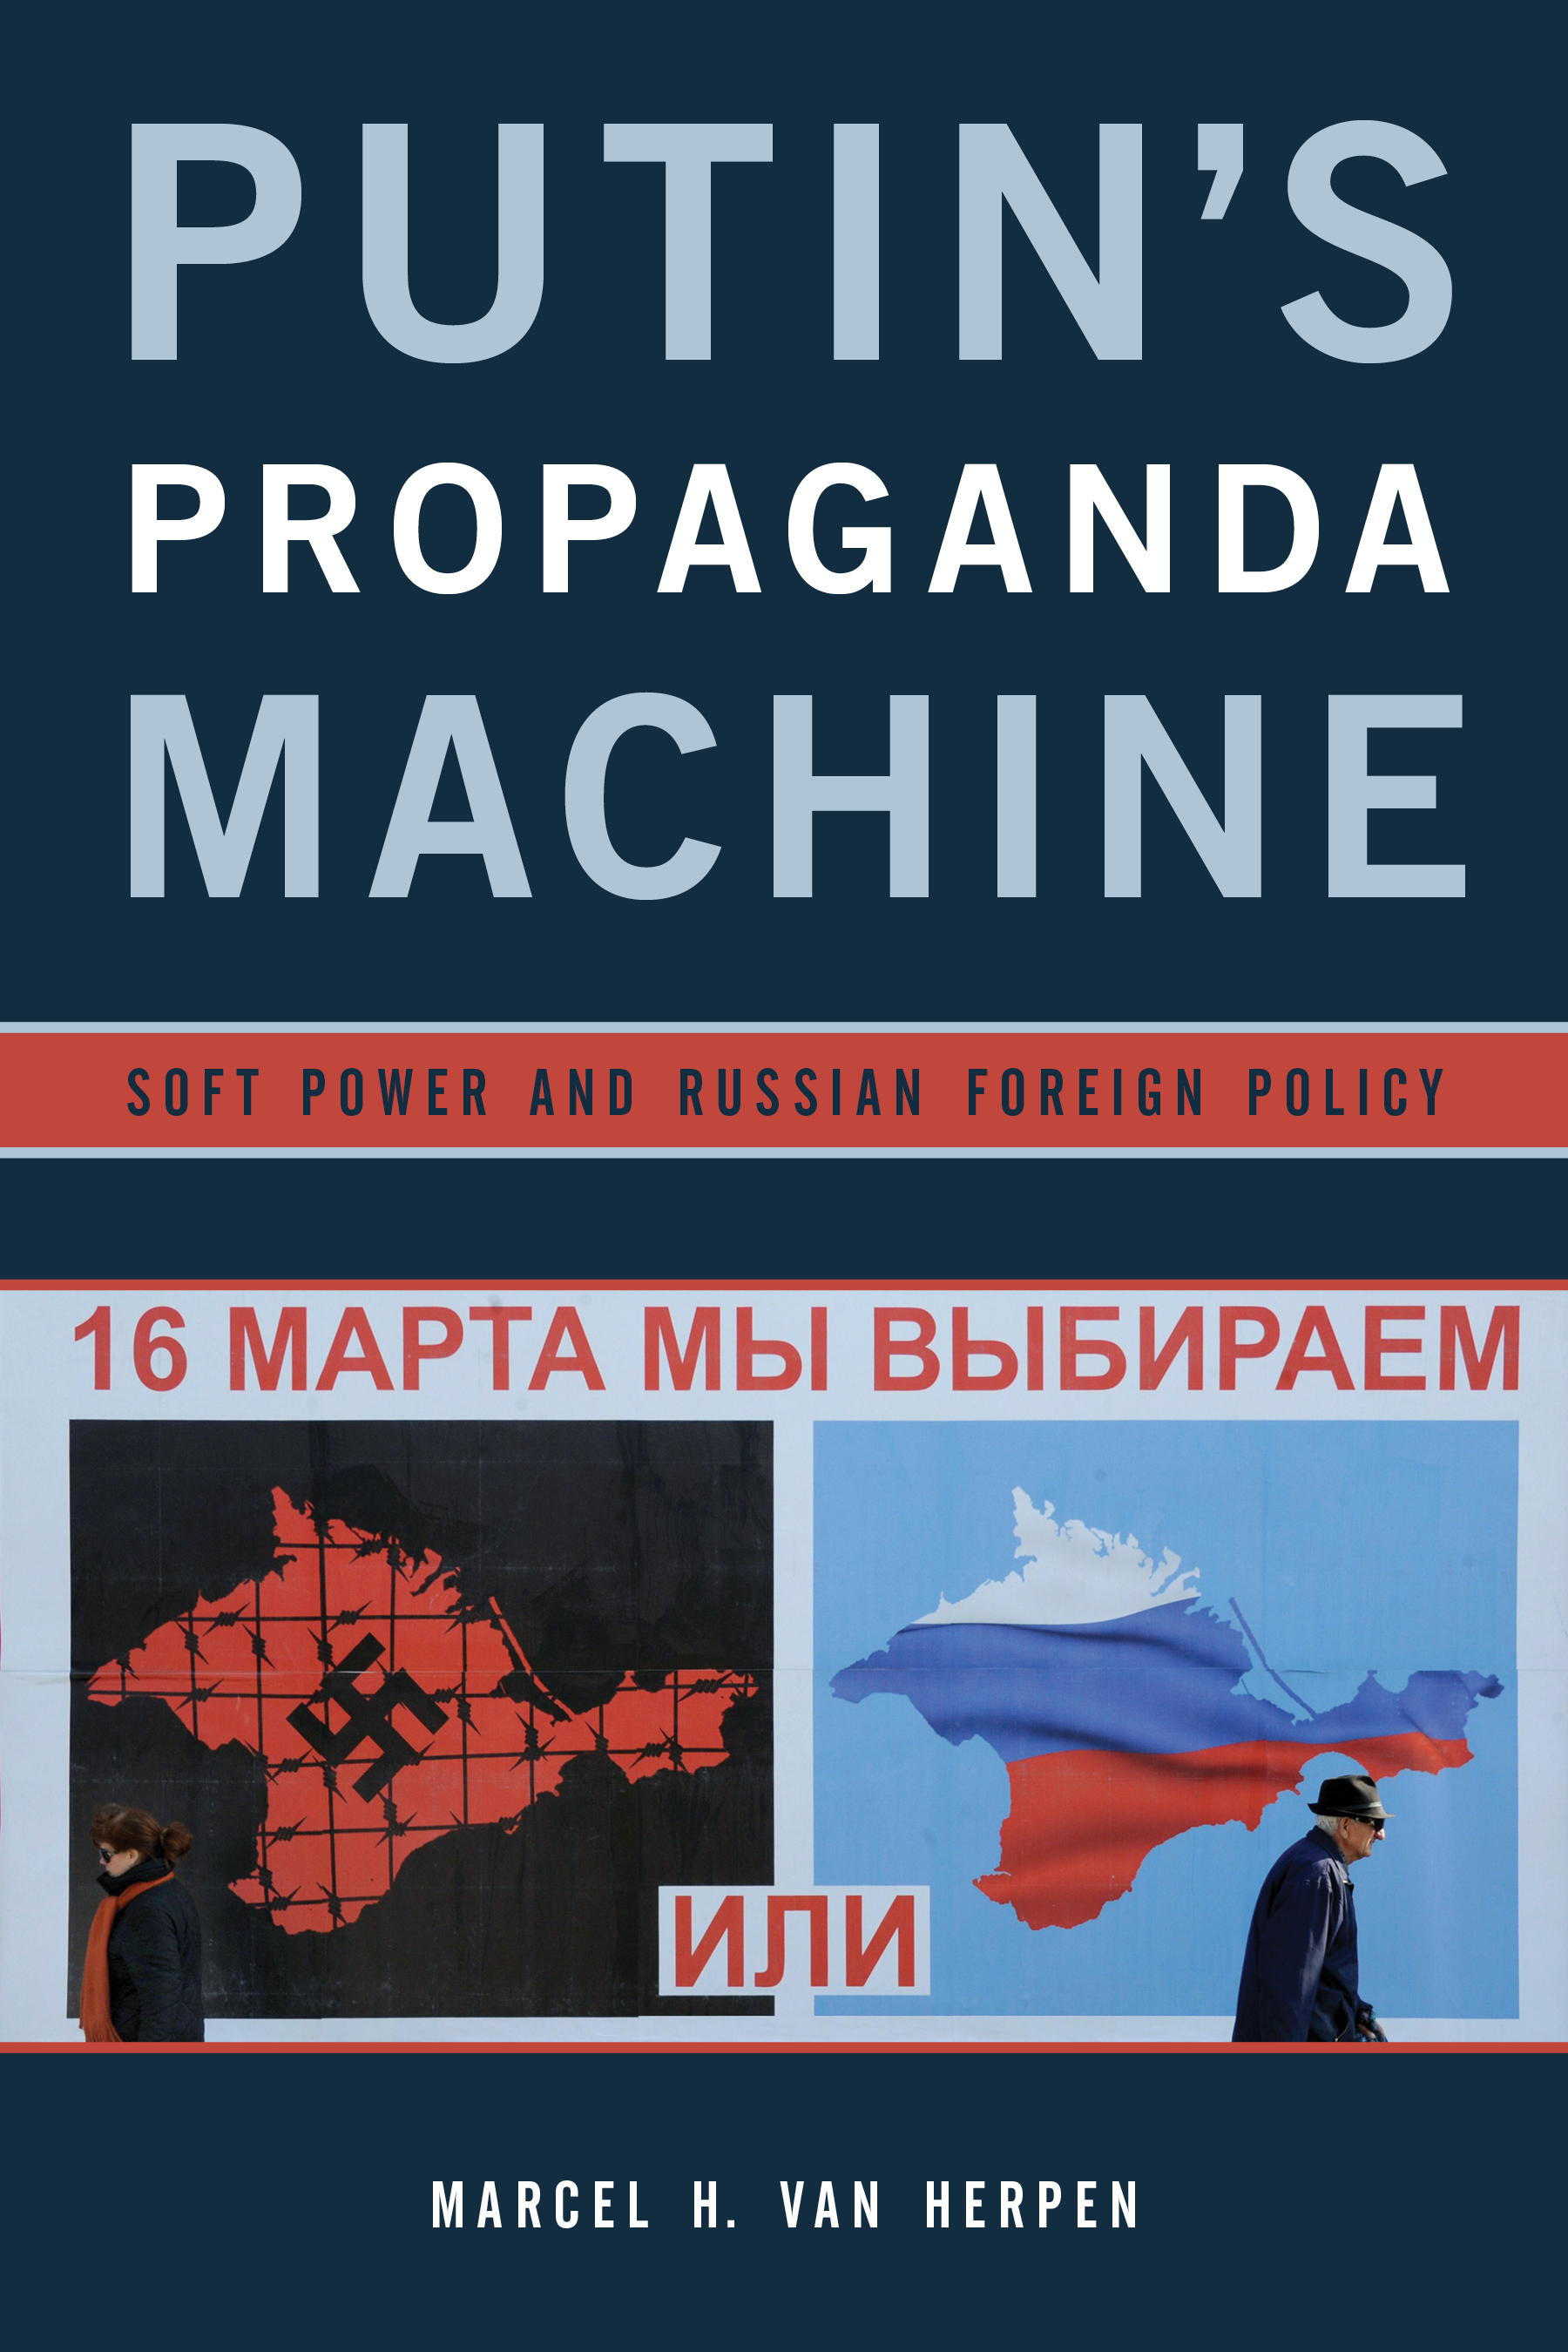 Putin's Propaganda Machine.jpg